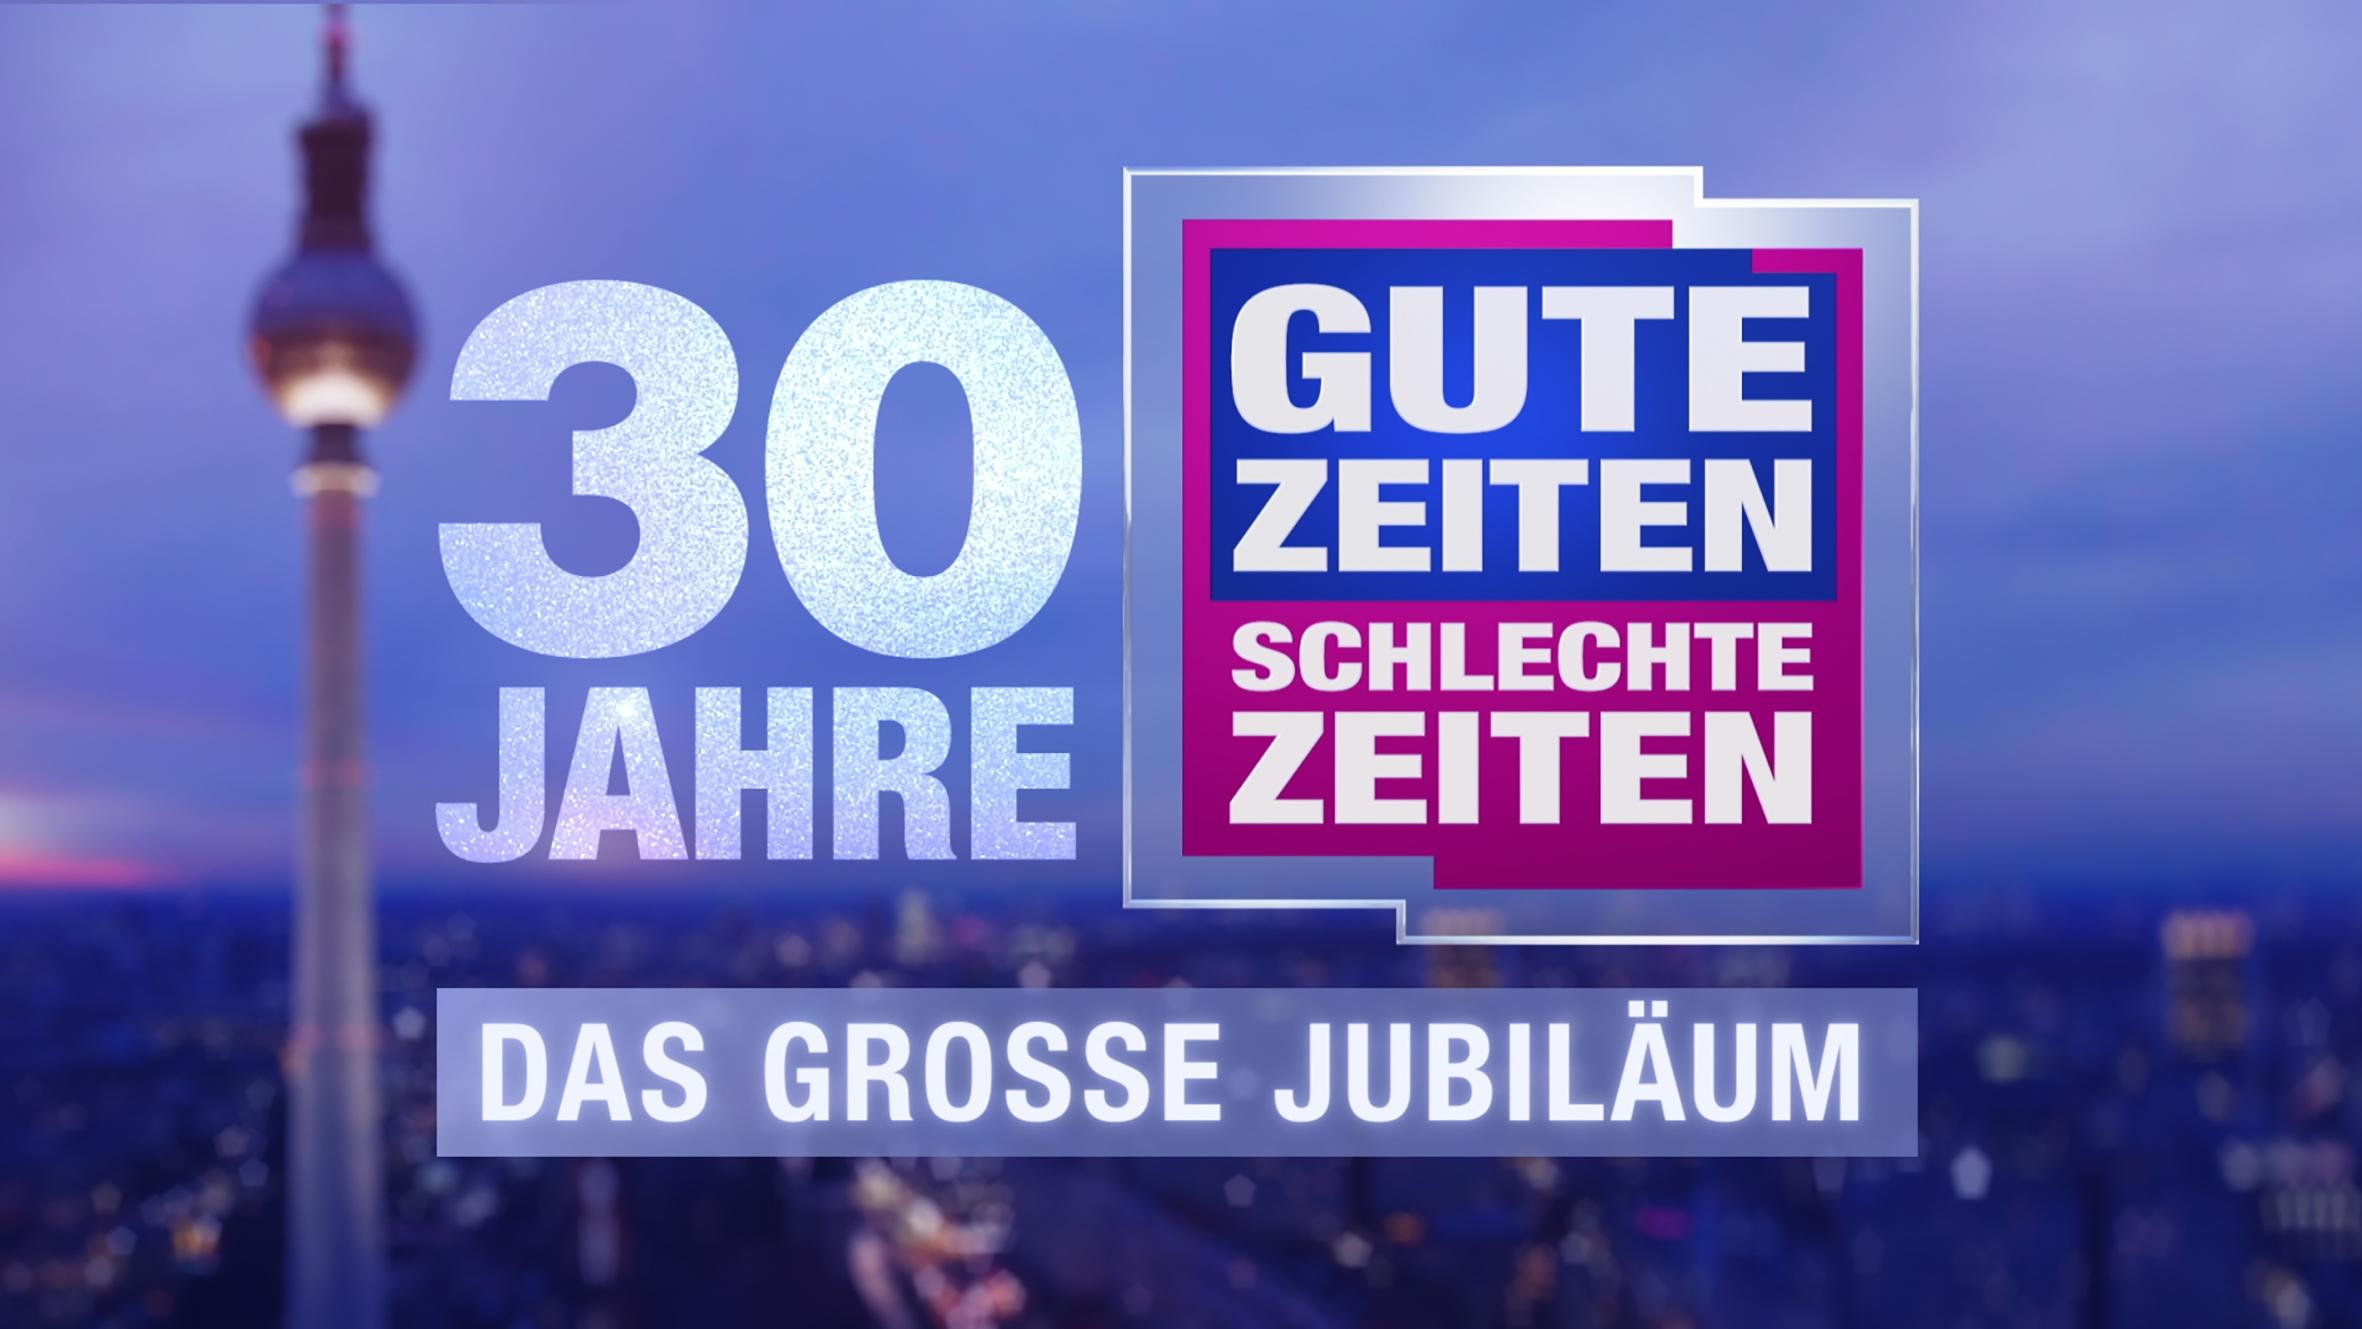 Deutschlands Daily Nr. 1 "Gute Zeiten, schlechte Zeiten" wird 30 Jahre alt und das wird gefeiert. 